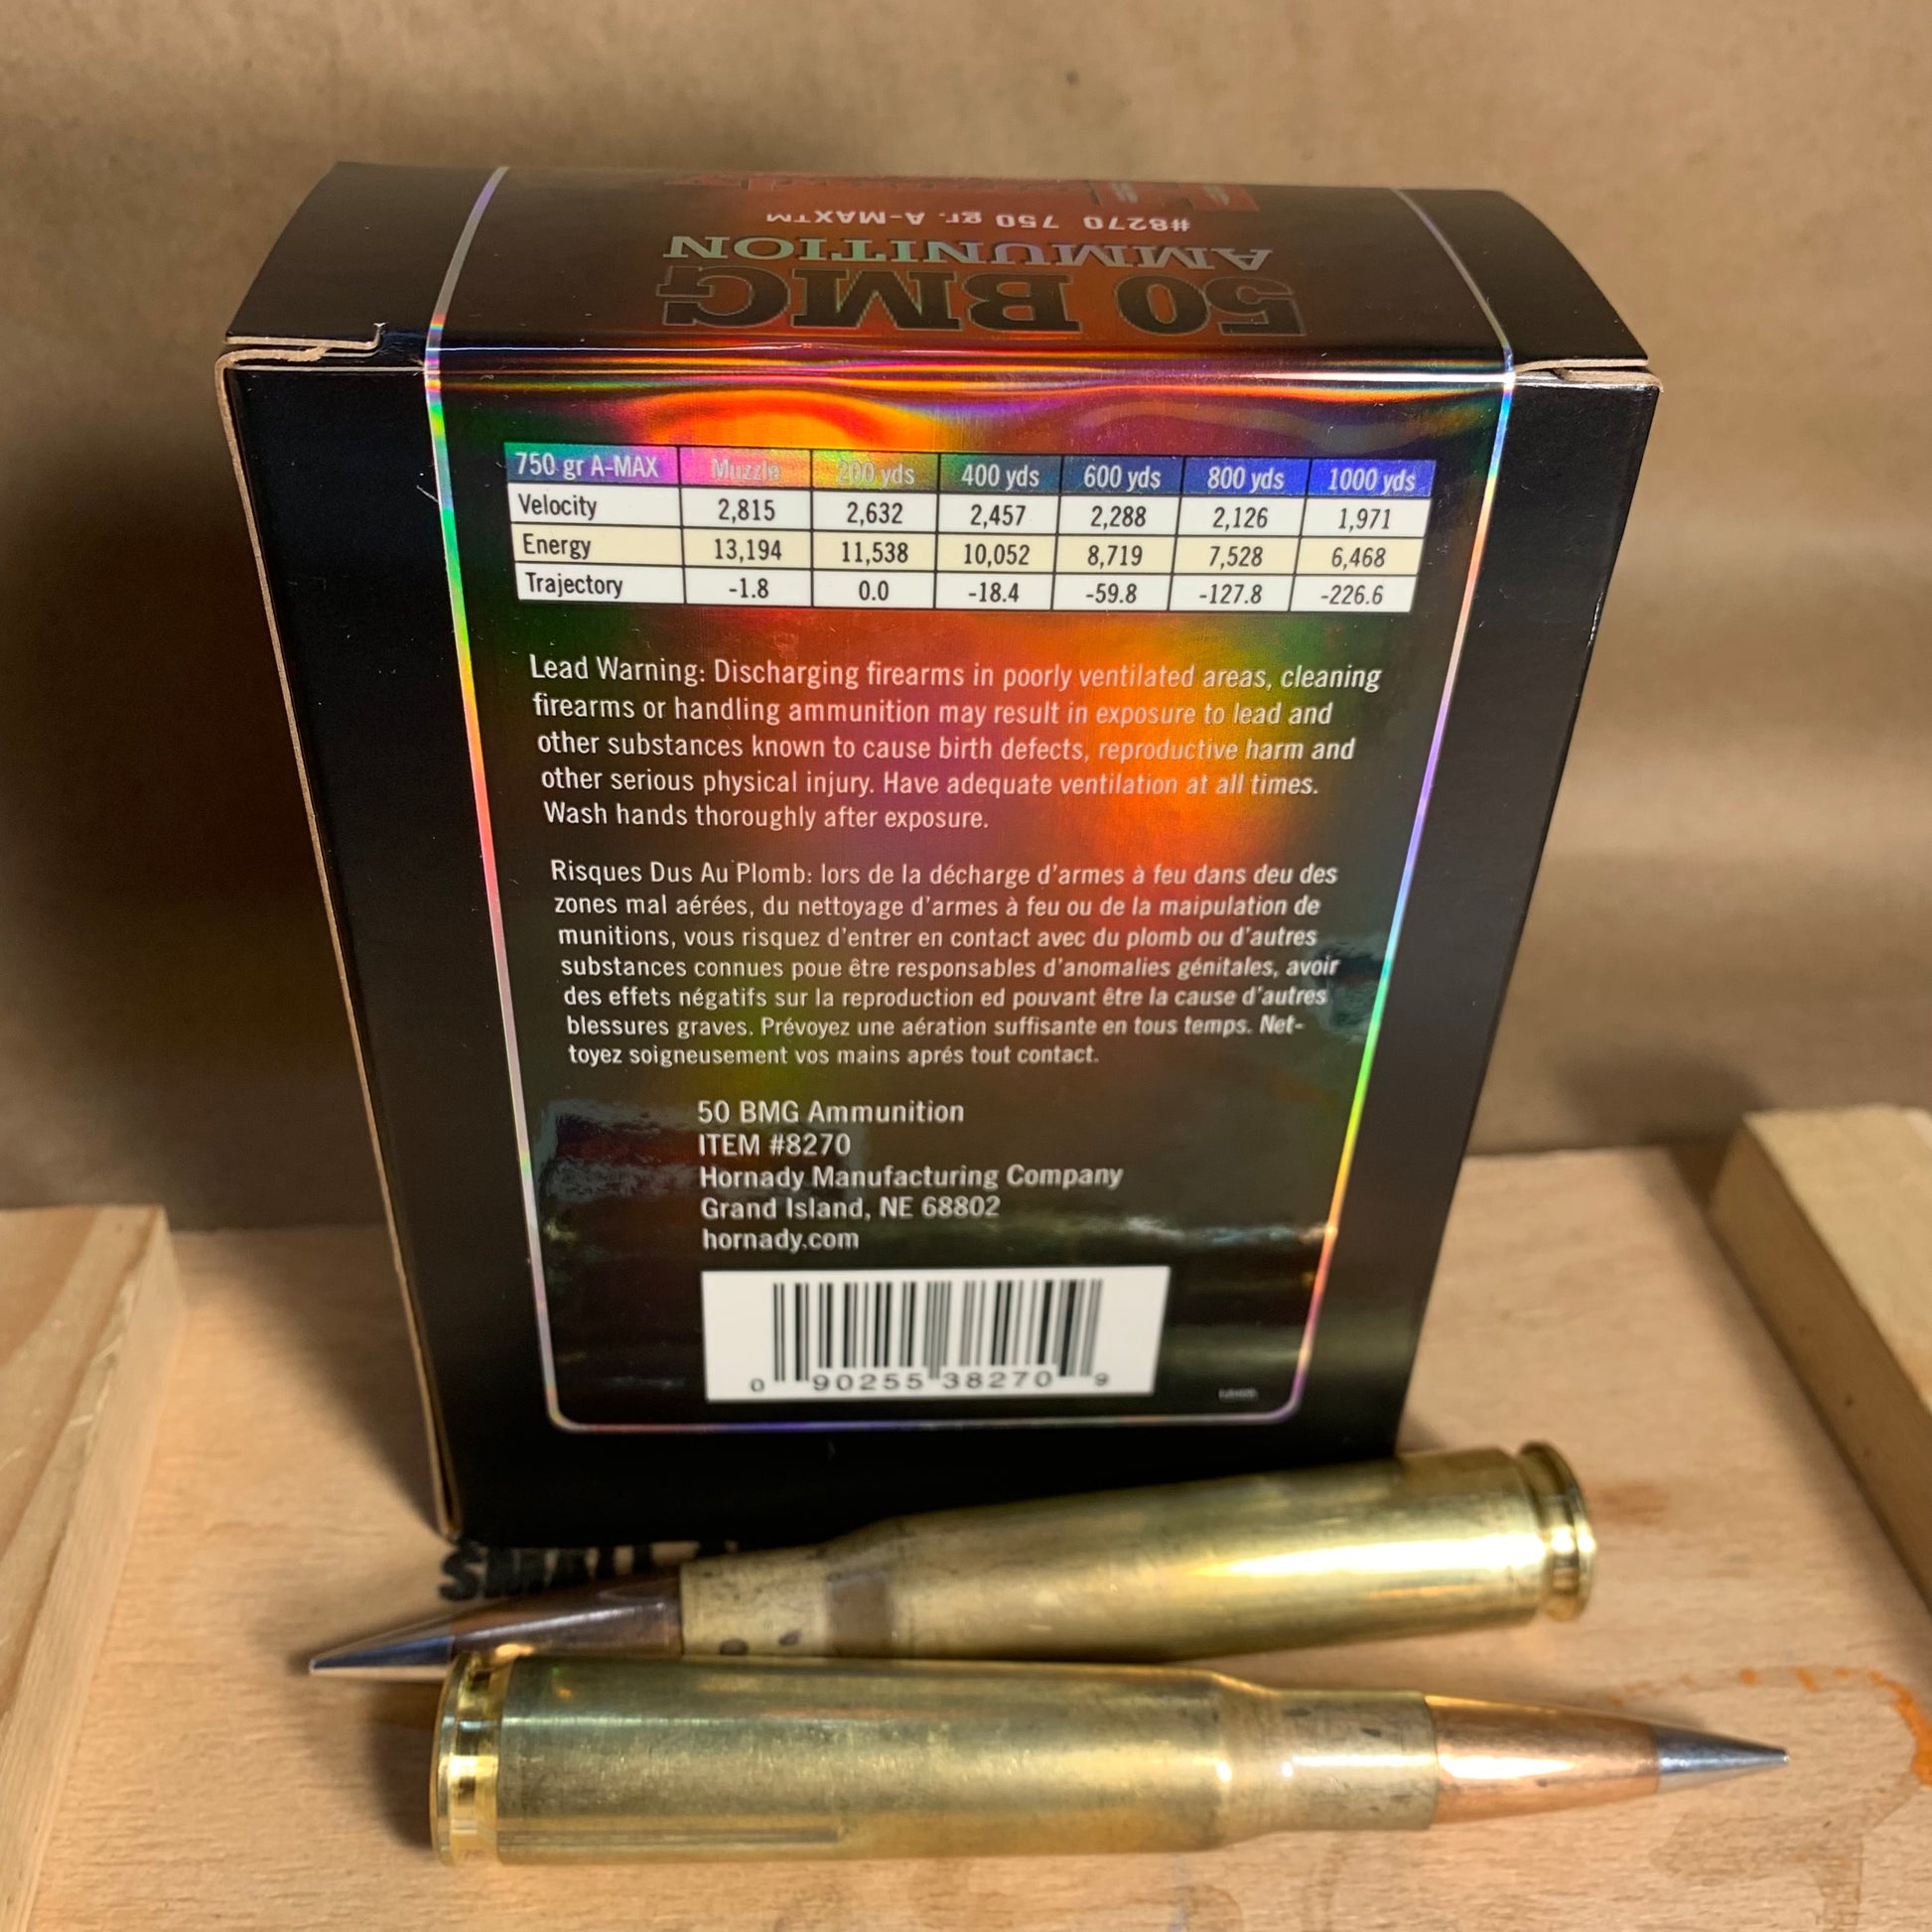 10 Round Box Hornady Match 50 BMG Ammo 750gr A-MAX - 8270